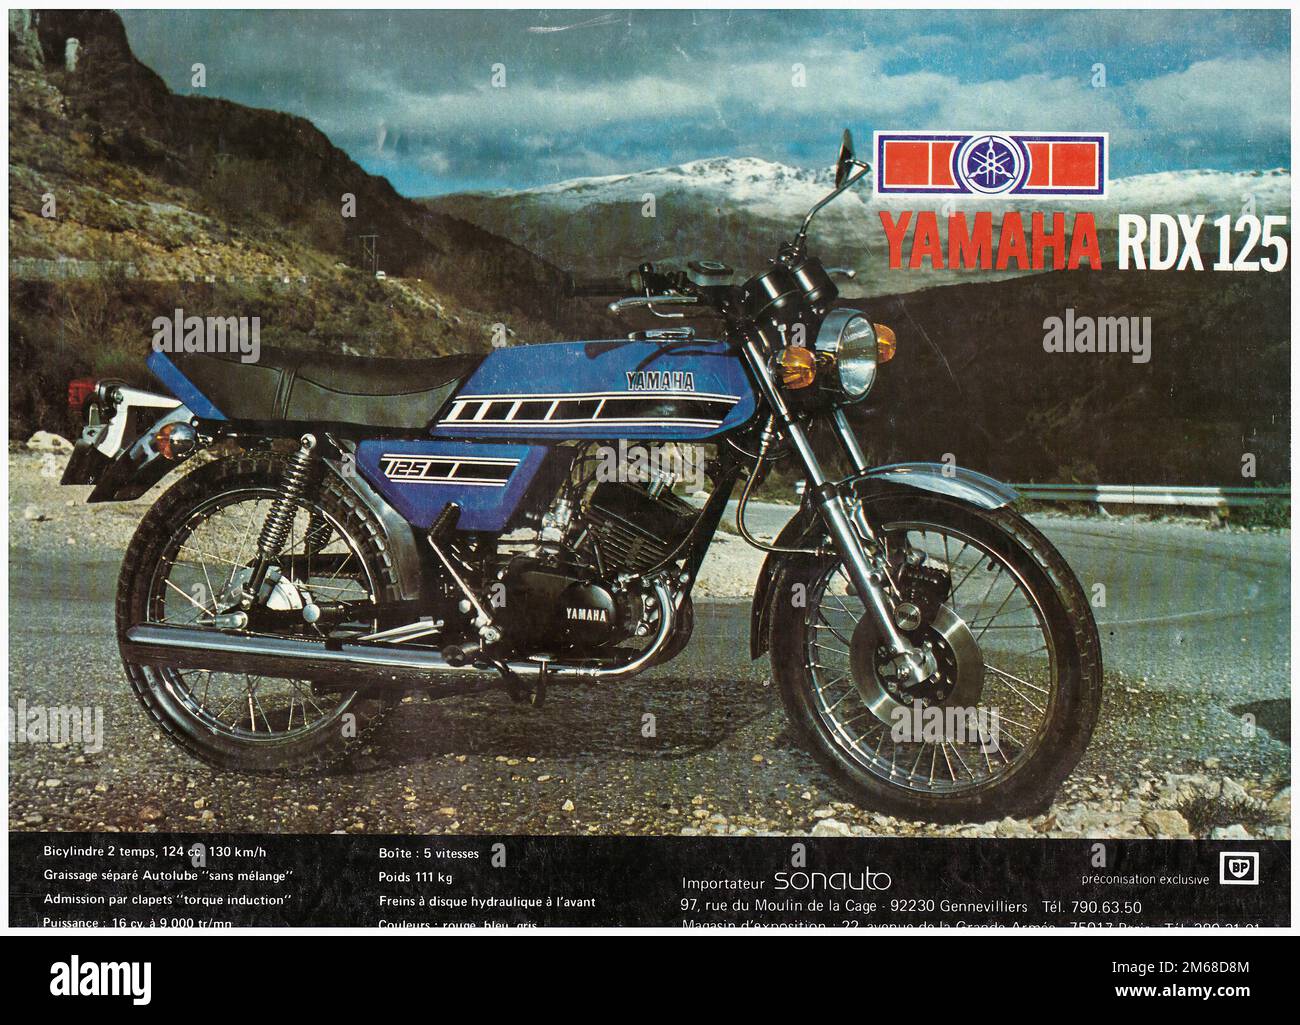 YAMAHA RDX 125 - Vintage Motorcycle Advertising Stock Photo - Alamy